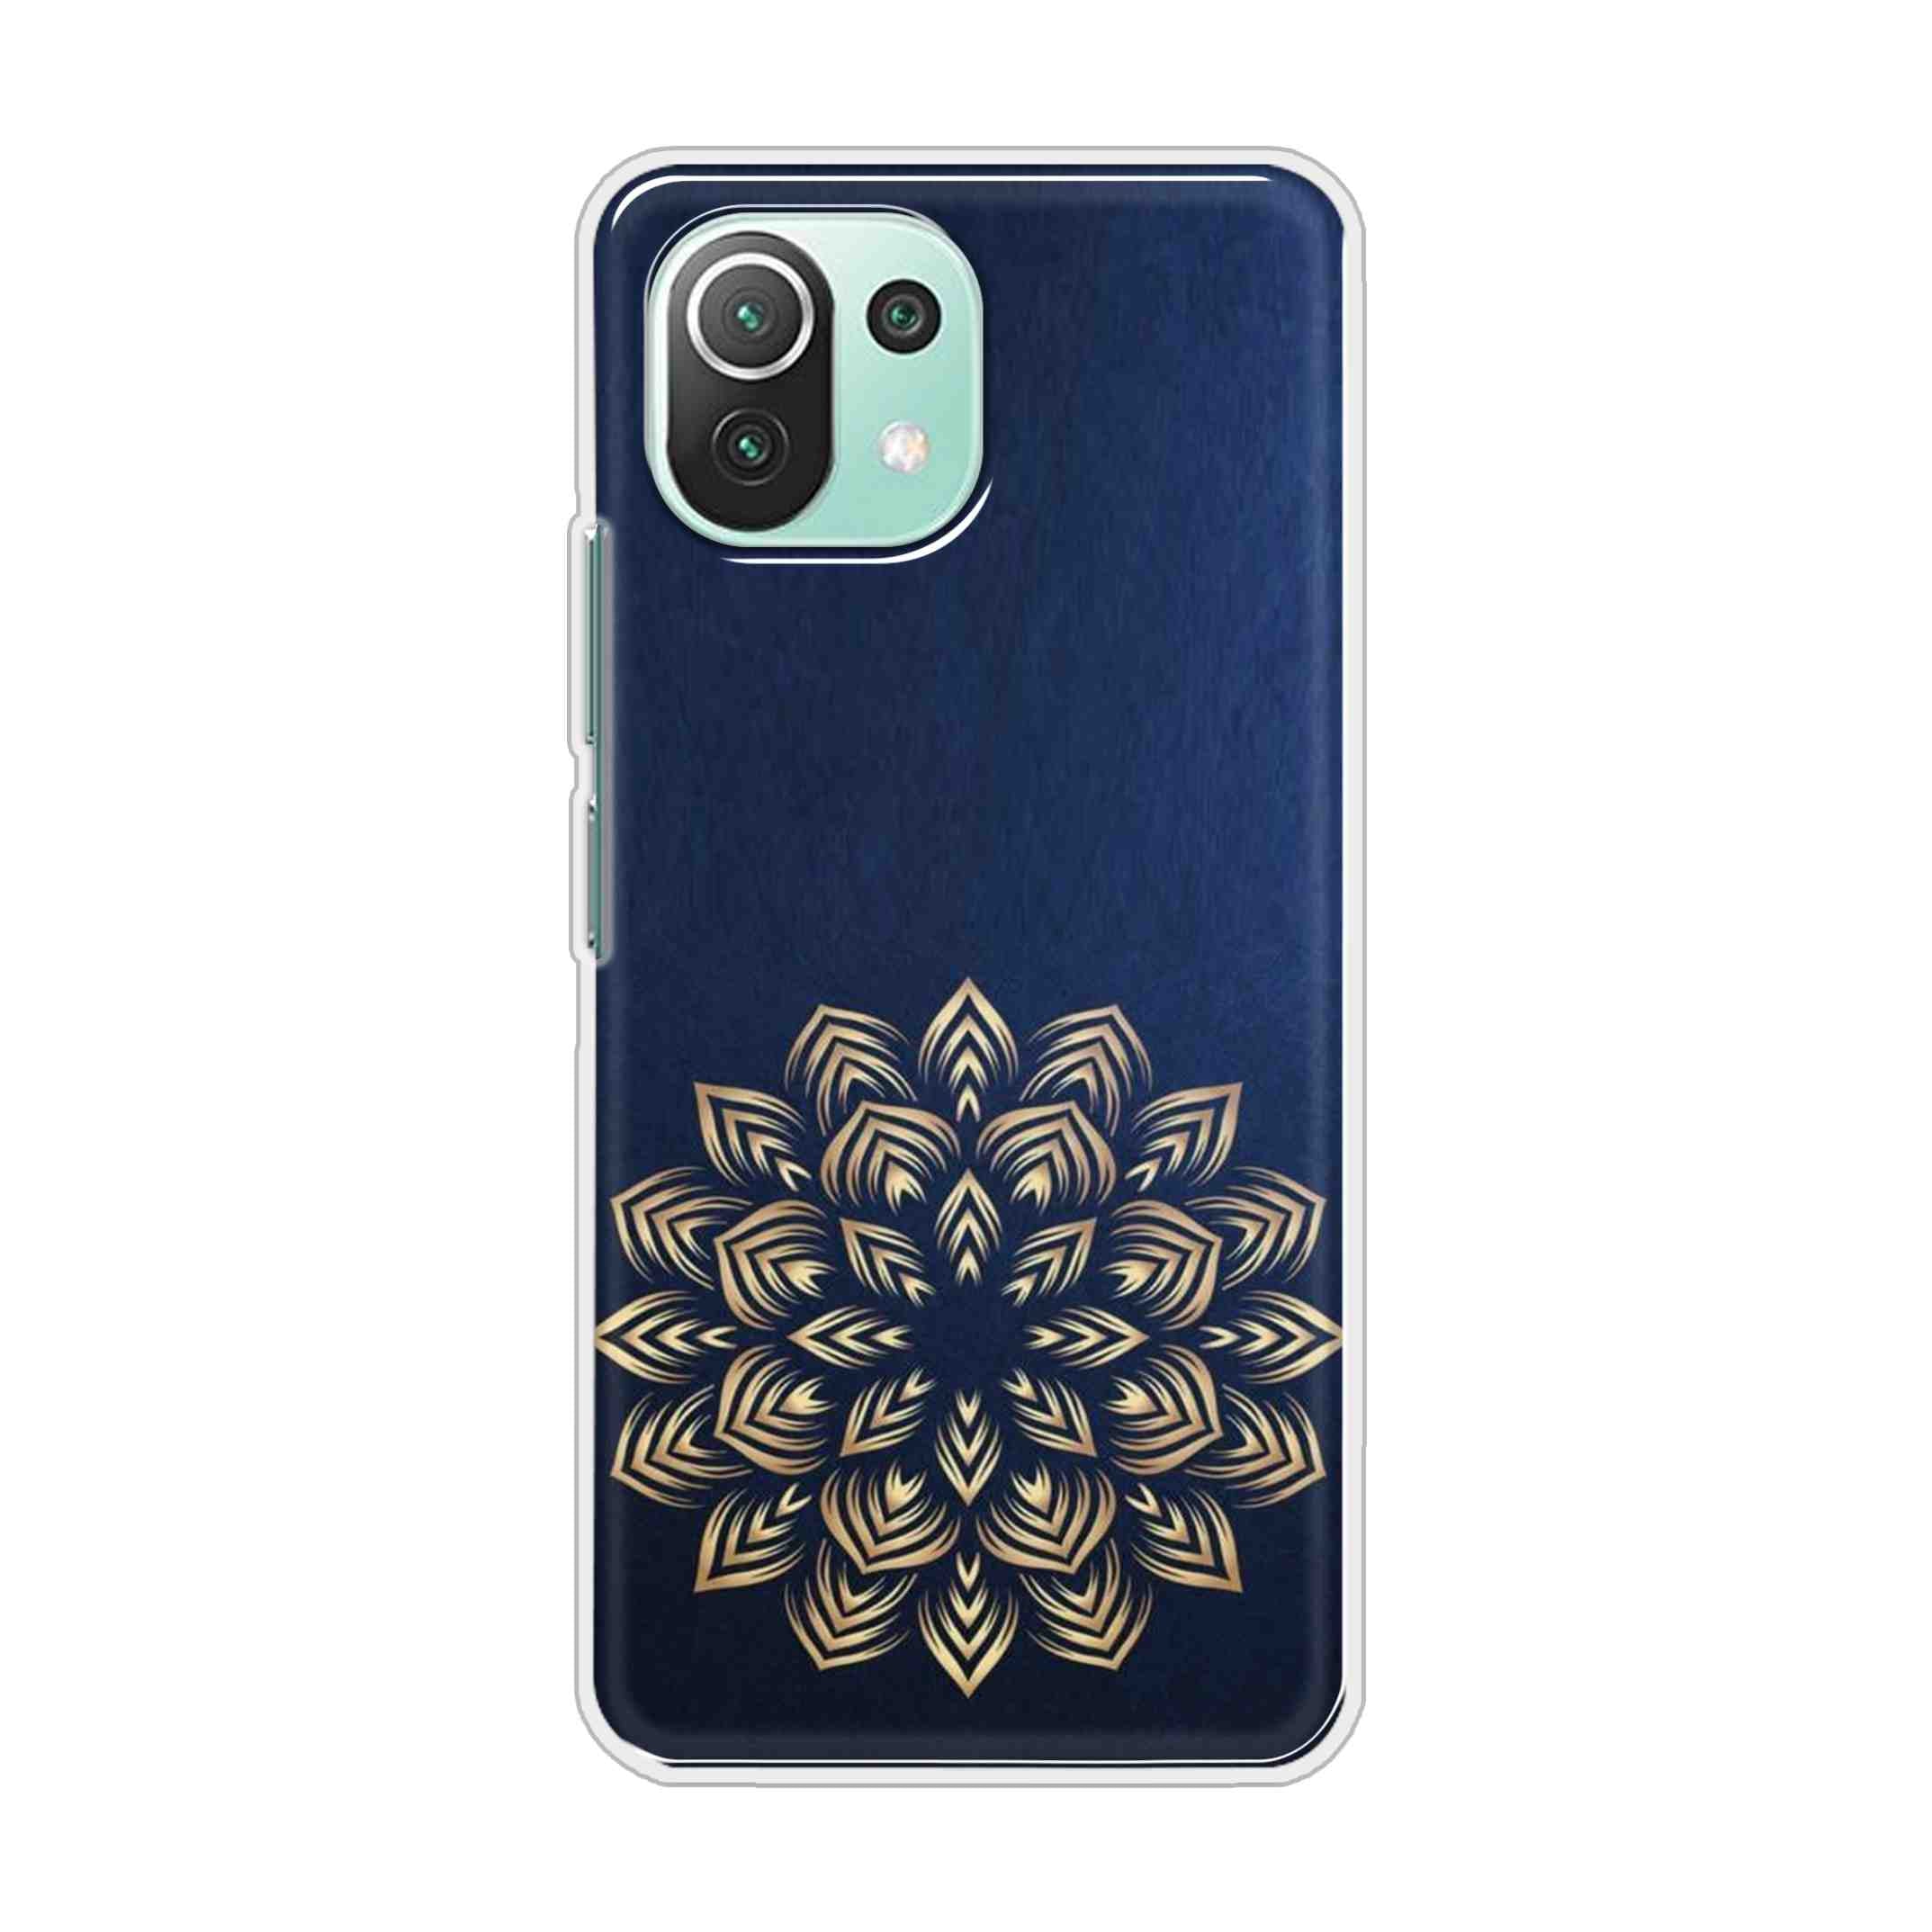 Buy Heart Mandala Hard Back Mobile Phone Case Cover For Mi 11 Lite 5G Online